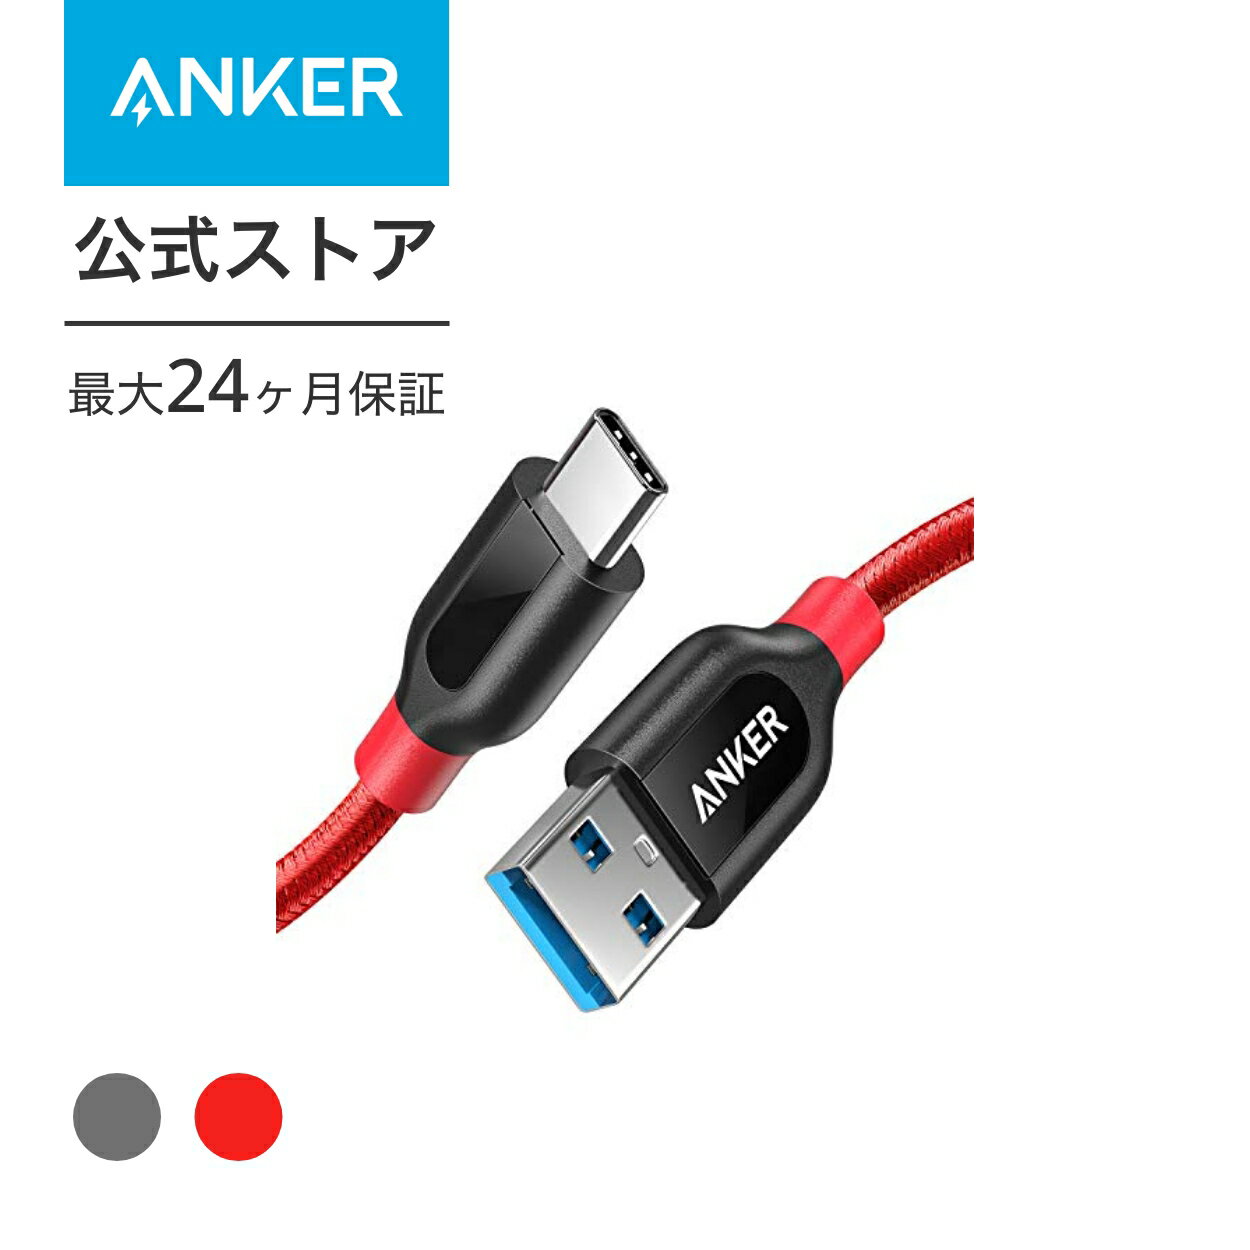 【140円OFF 5/16まで】Anker PowerLine USB-C USB-A 3.0 ケーブルGalaxy S8 / S8 MacBook Xperia XZ対応(0.9m)レッド グレー